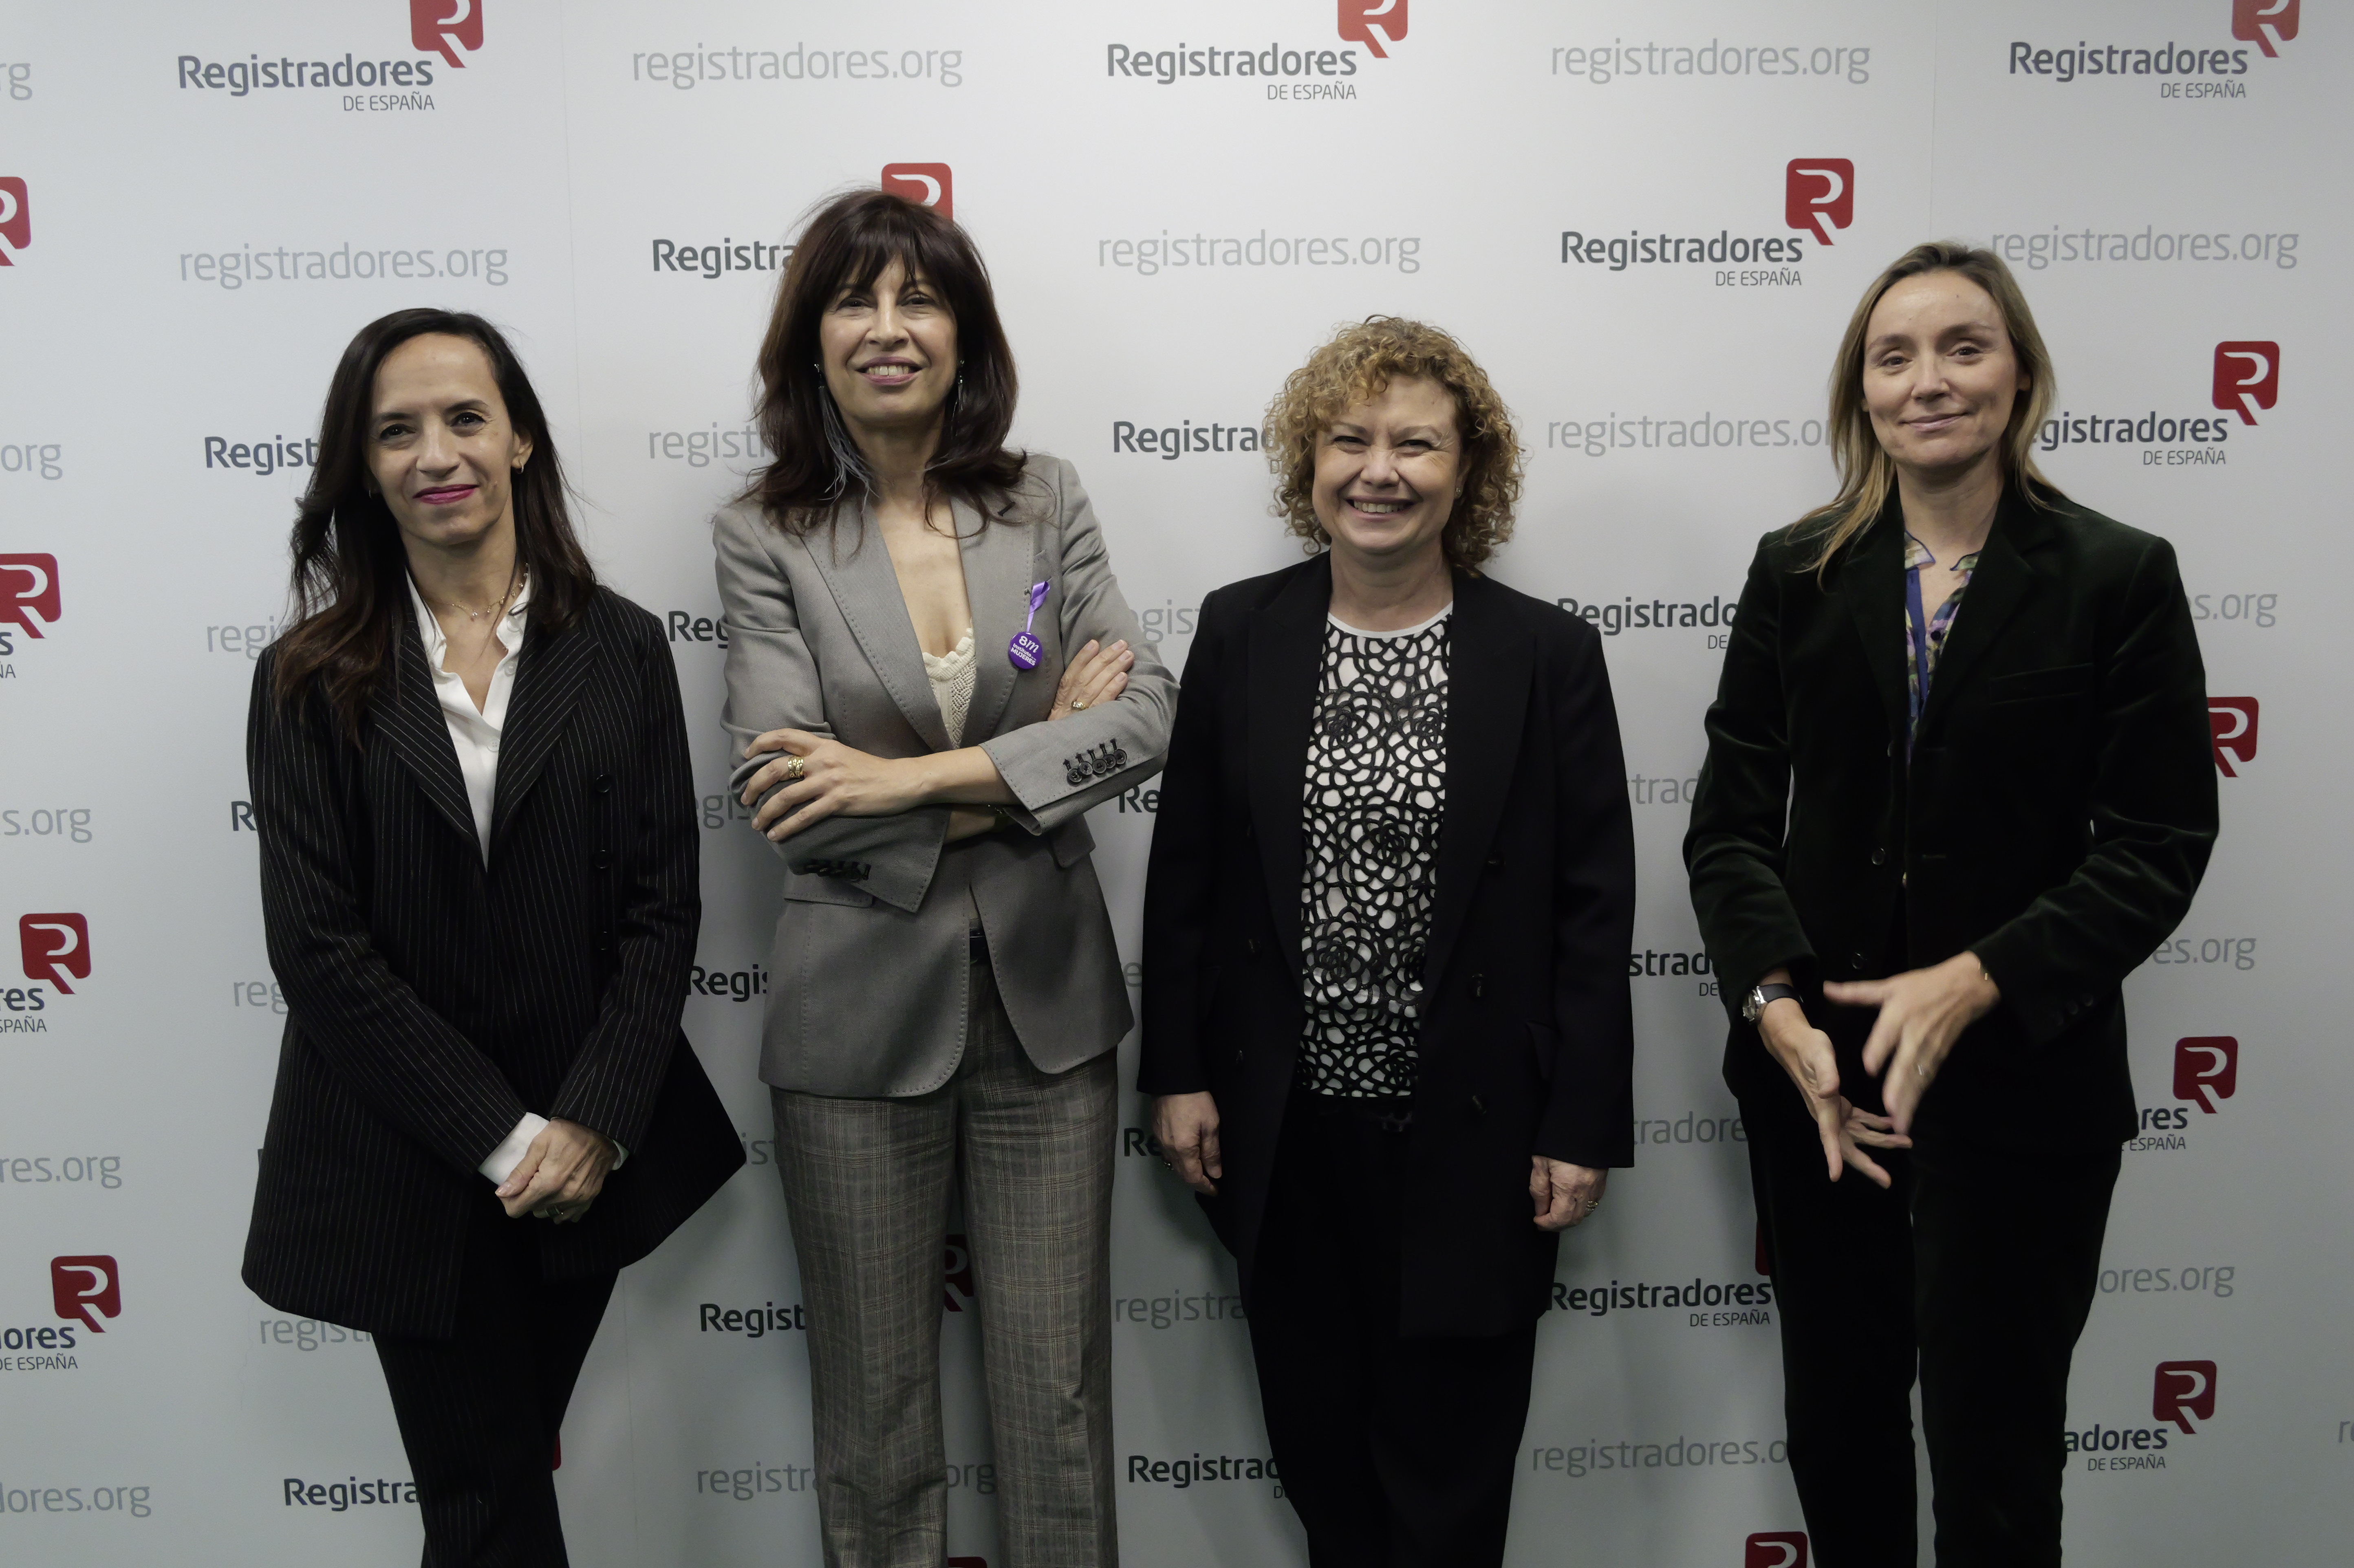 La ministra de Igualdad, Ana Redondo preside un conversatorio con más de 60 mujeres registradoras para conmemorar el 8 de marzo